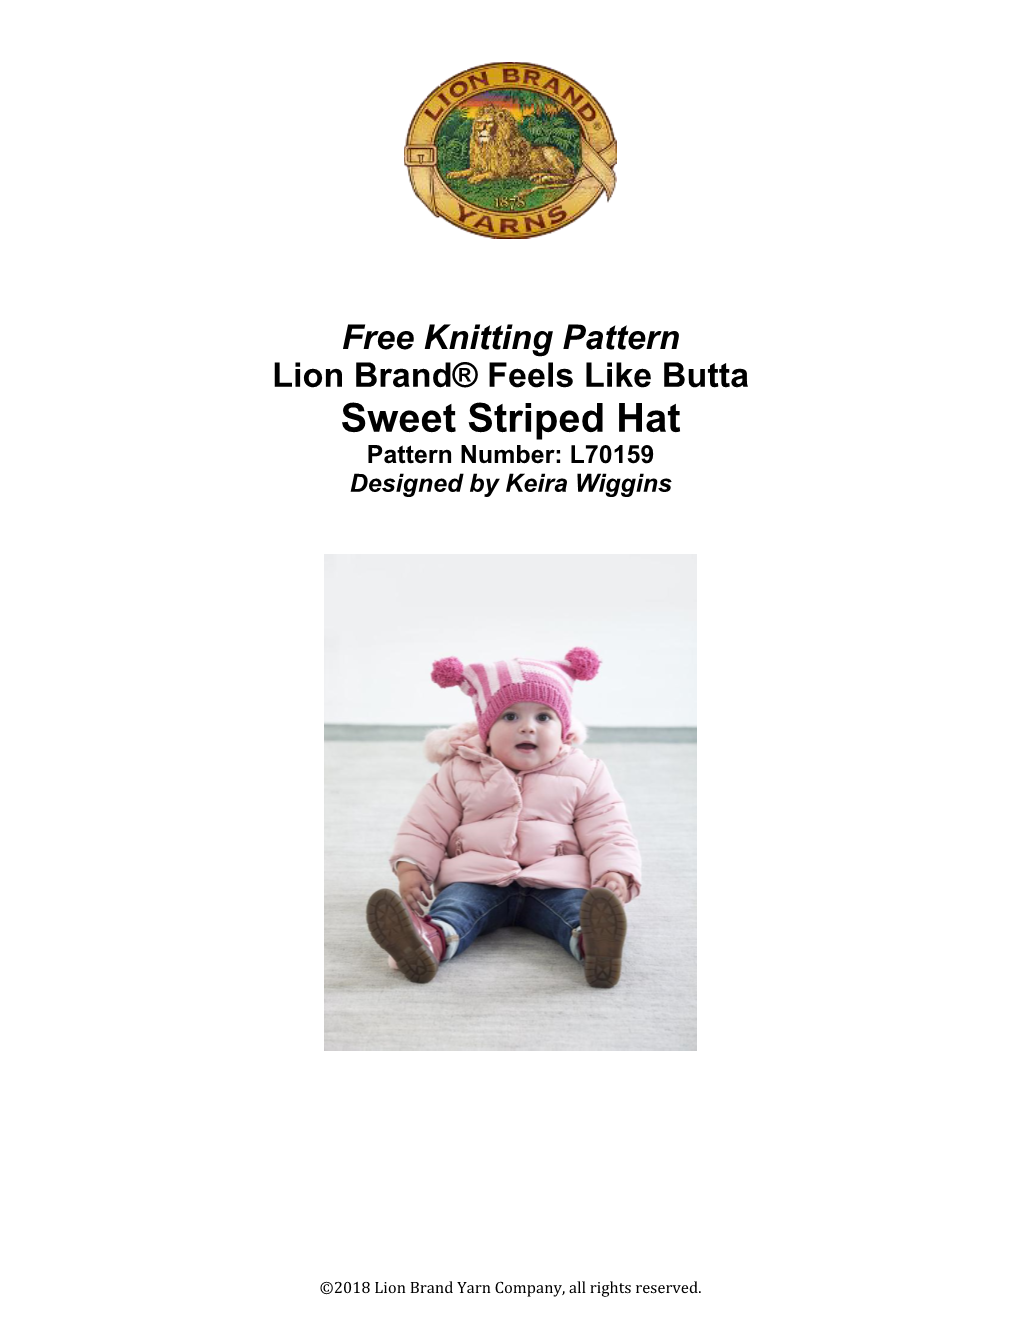 Free Knitting Pattern Lion Brand® Feels Like Butta